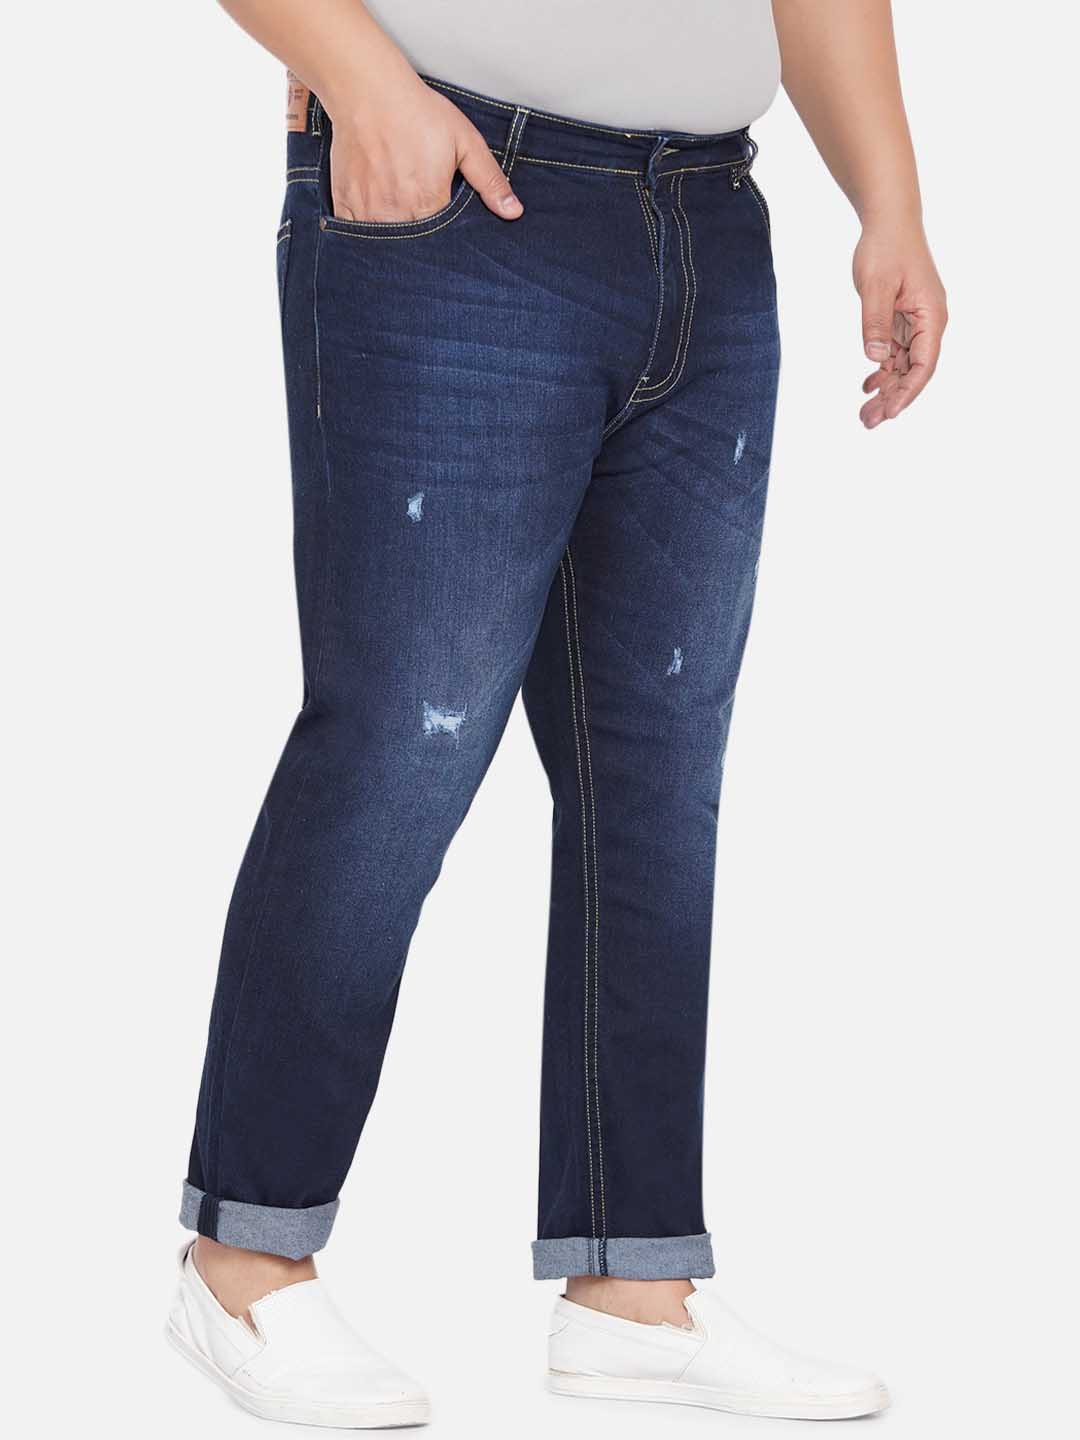 bottomwear/jeans/JPJ12234/jpj12234-3.jpg